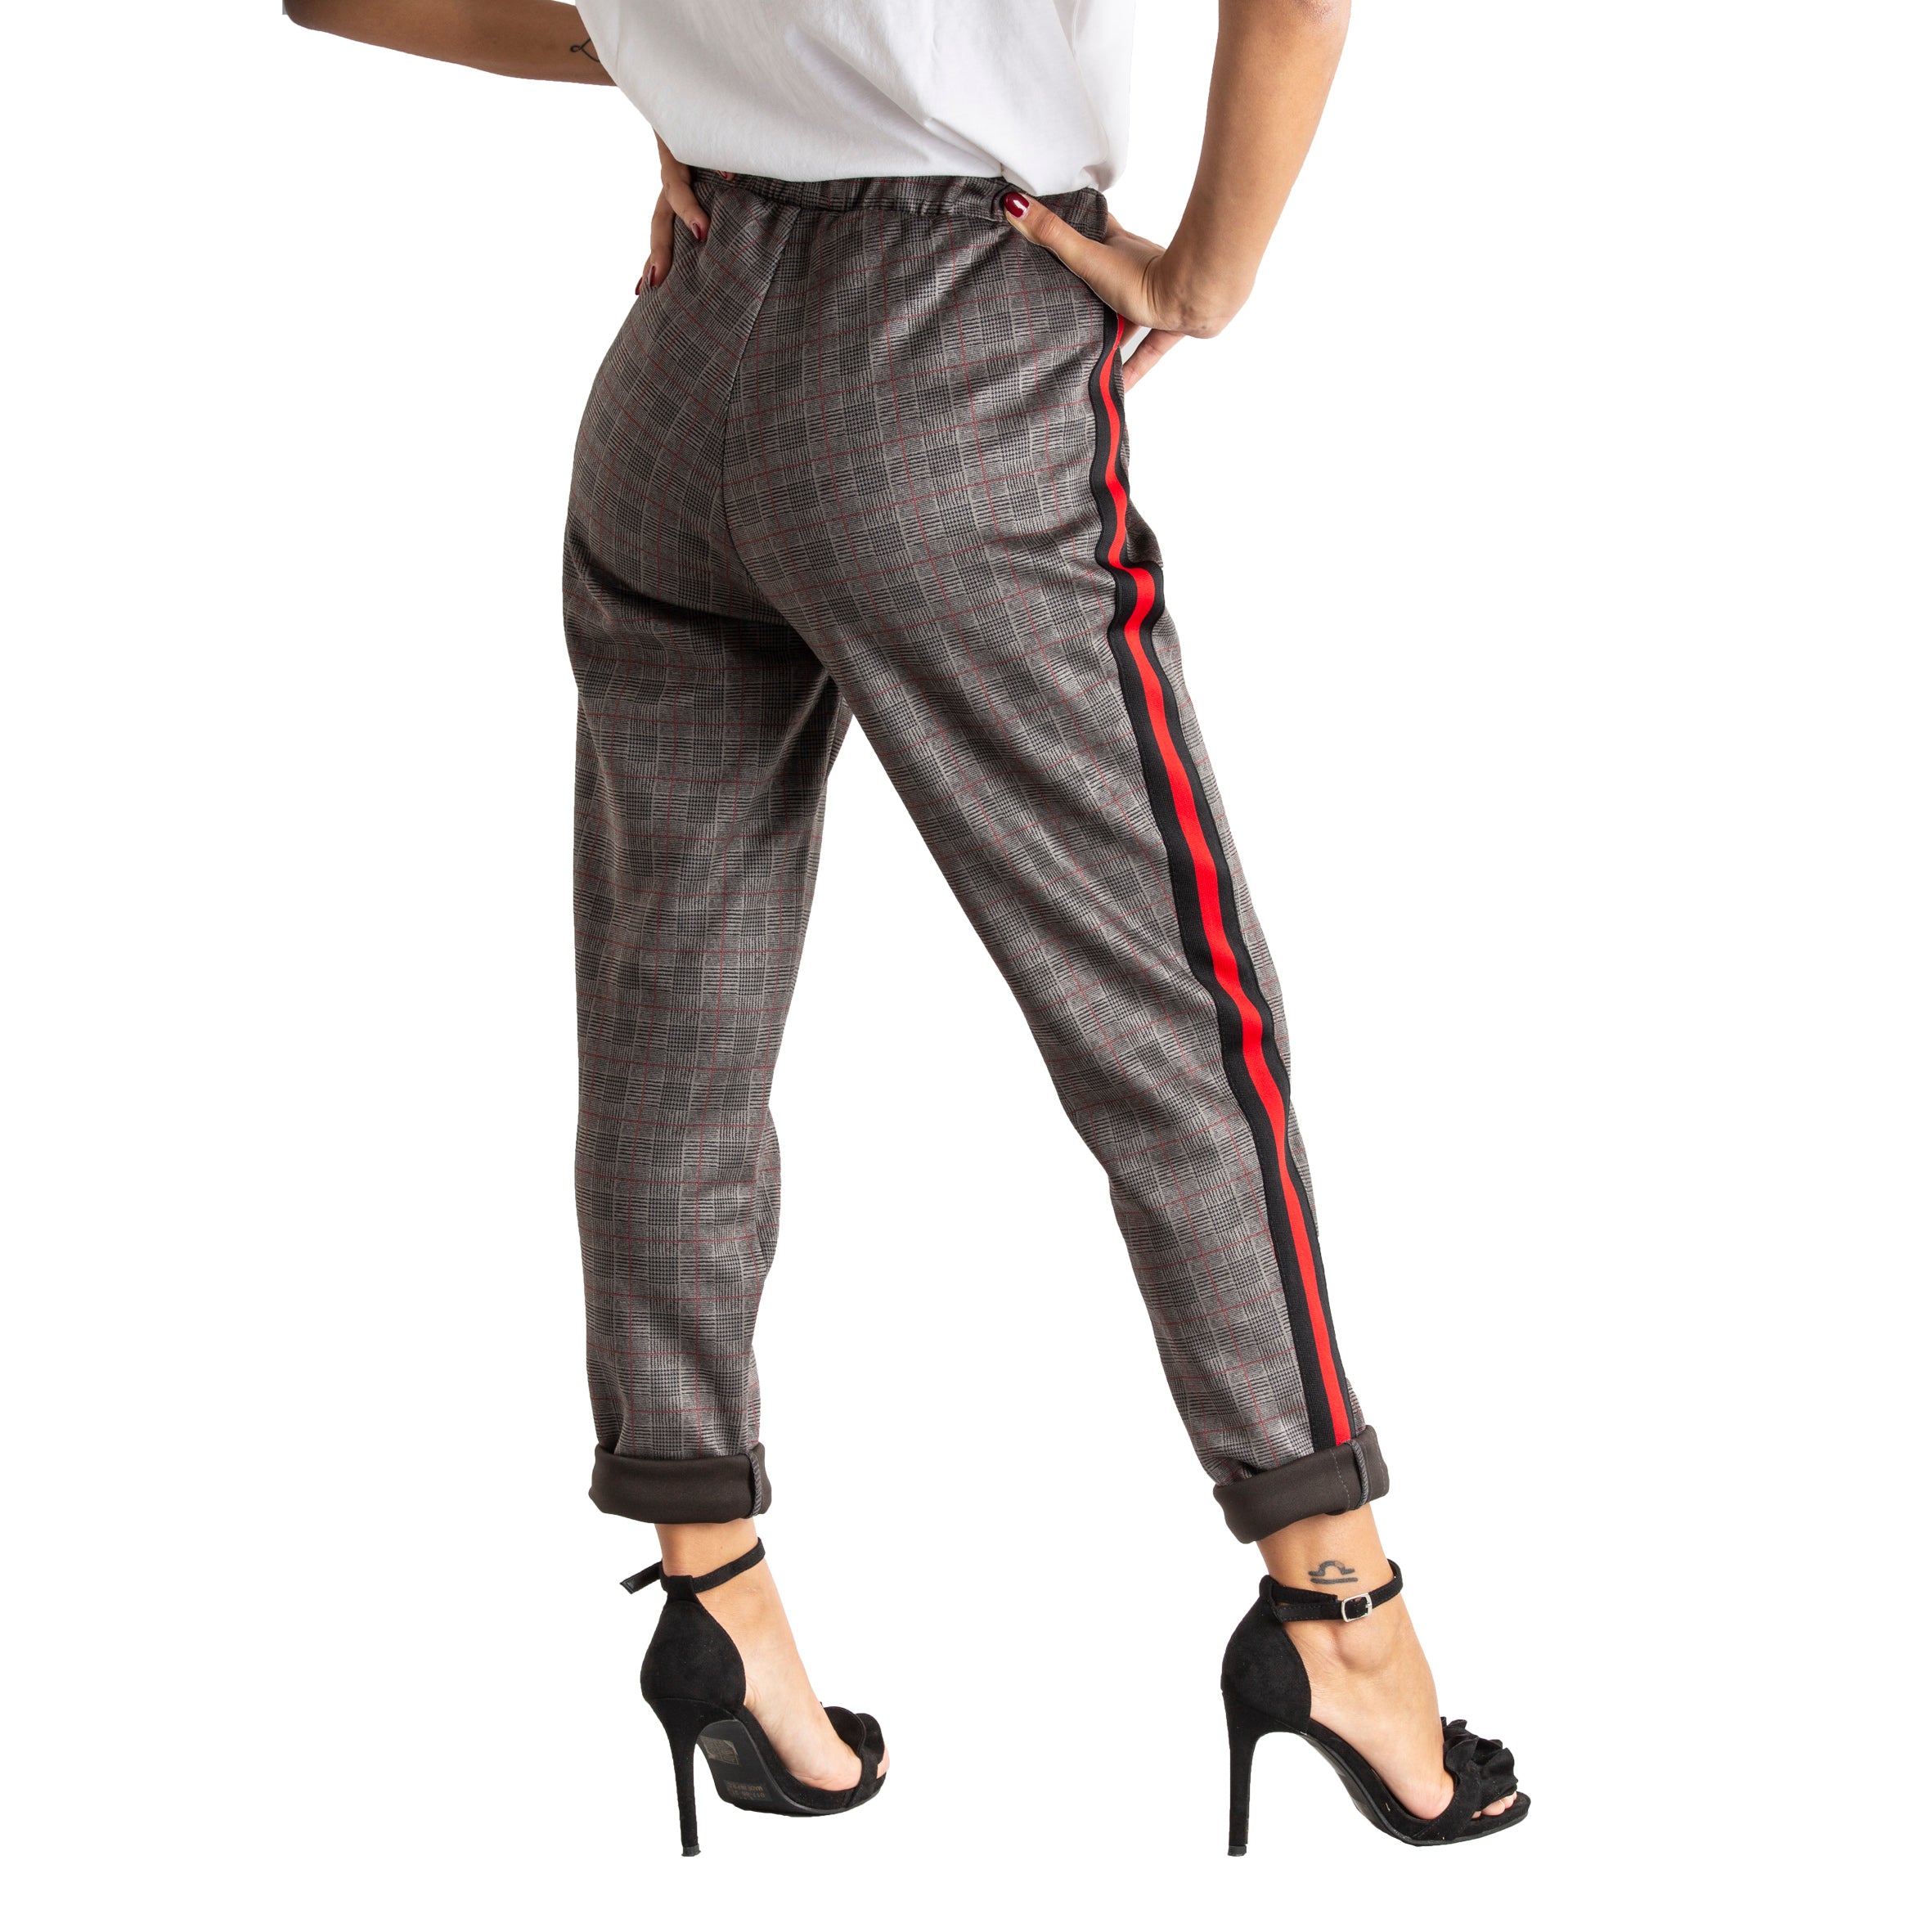 Pantalone donna confort alla caviglia con elastico in vita made in italy 1444